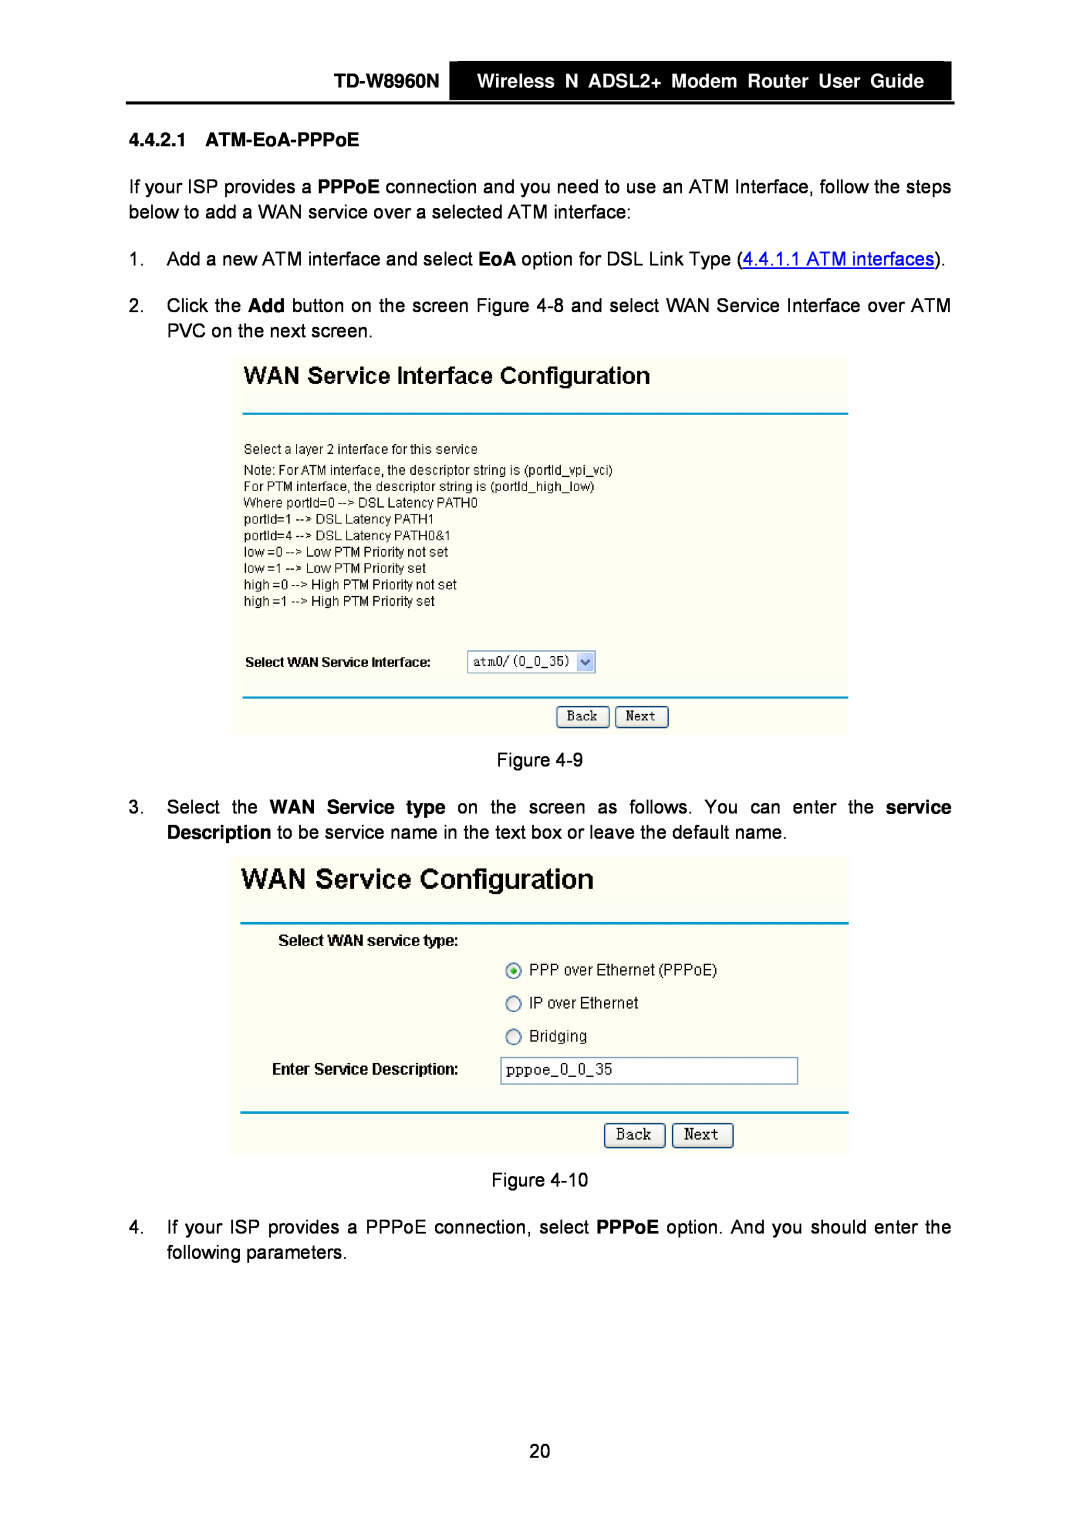 TP-Link manual TD-W8960N Wireless N ADSL2+ Modem Router User Guide, ATM-EoA-PPPoE 